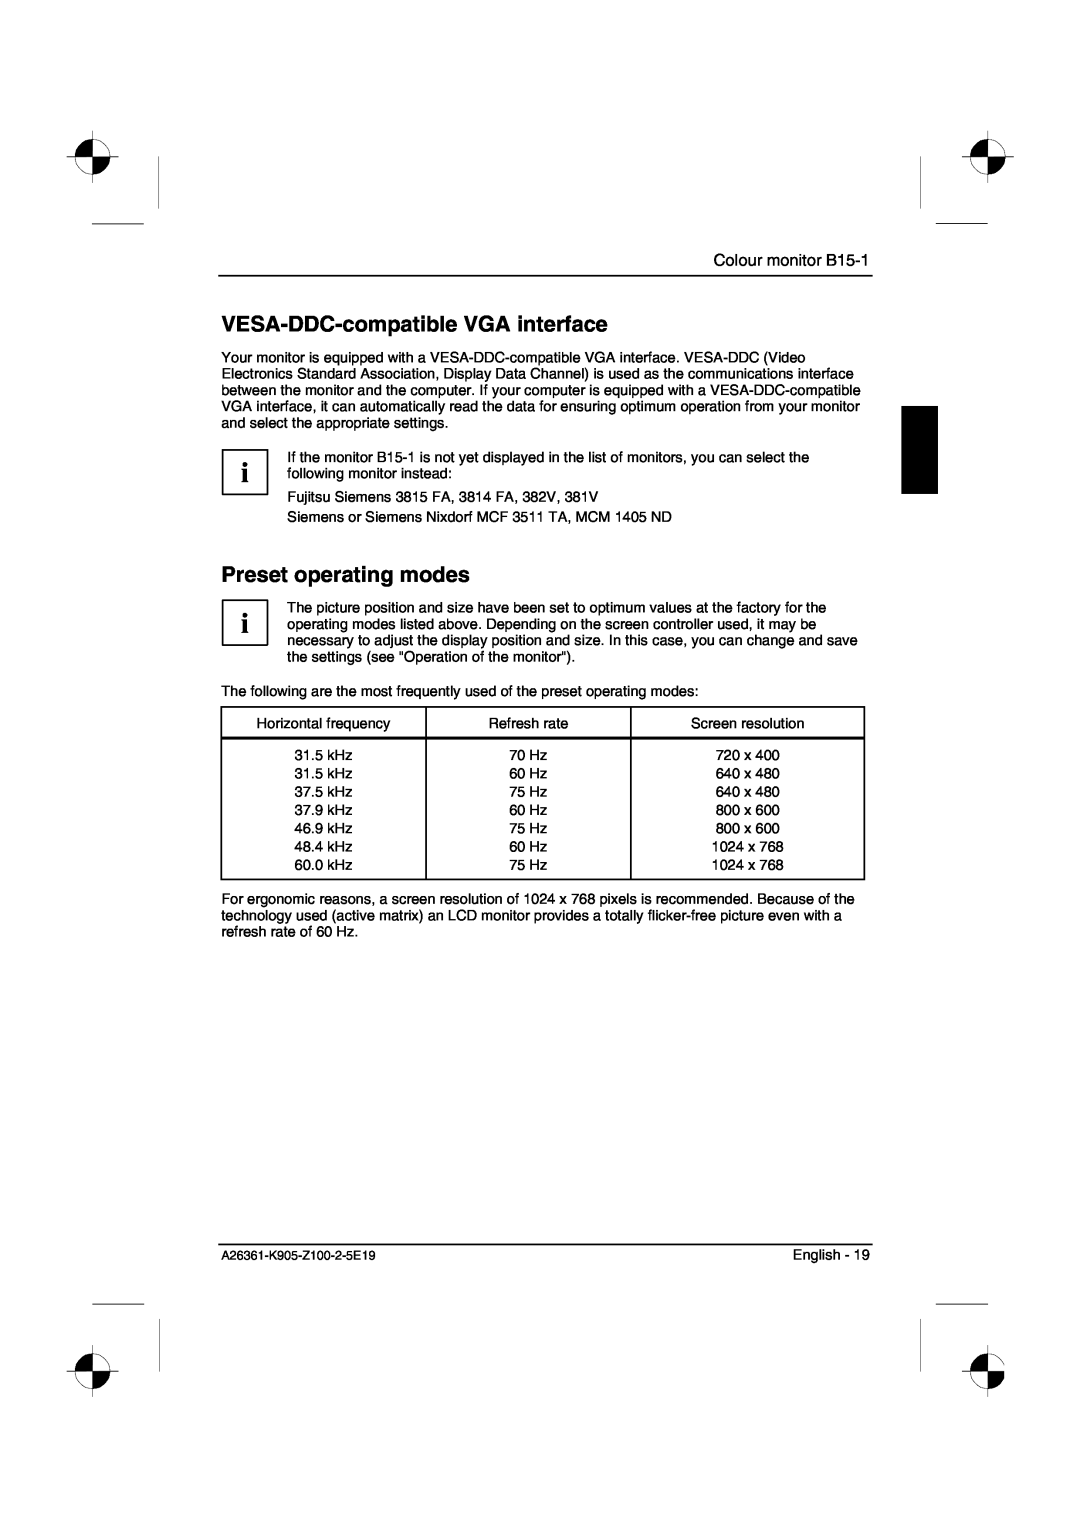 Fujitsu Siemens Computers manual VESA-DDC-compatible VGA interface, Preset operating modes, Colour monitor B15-1 